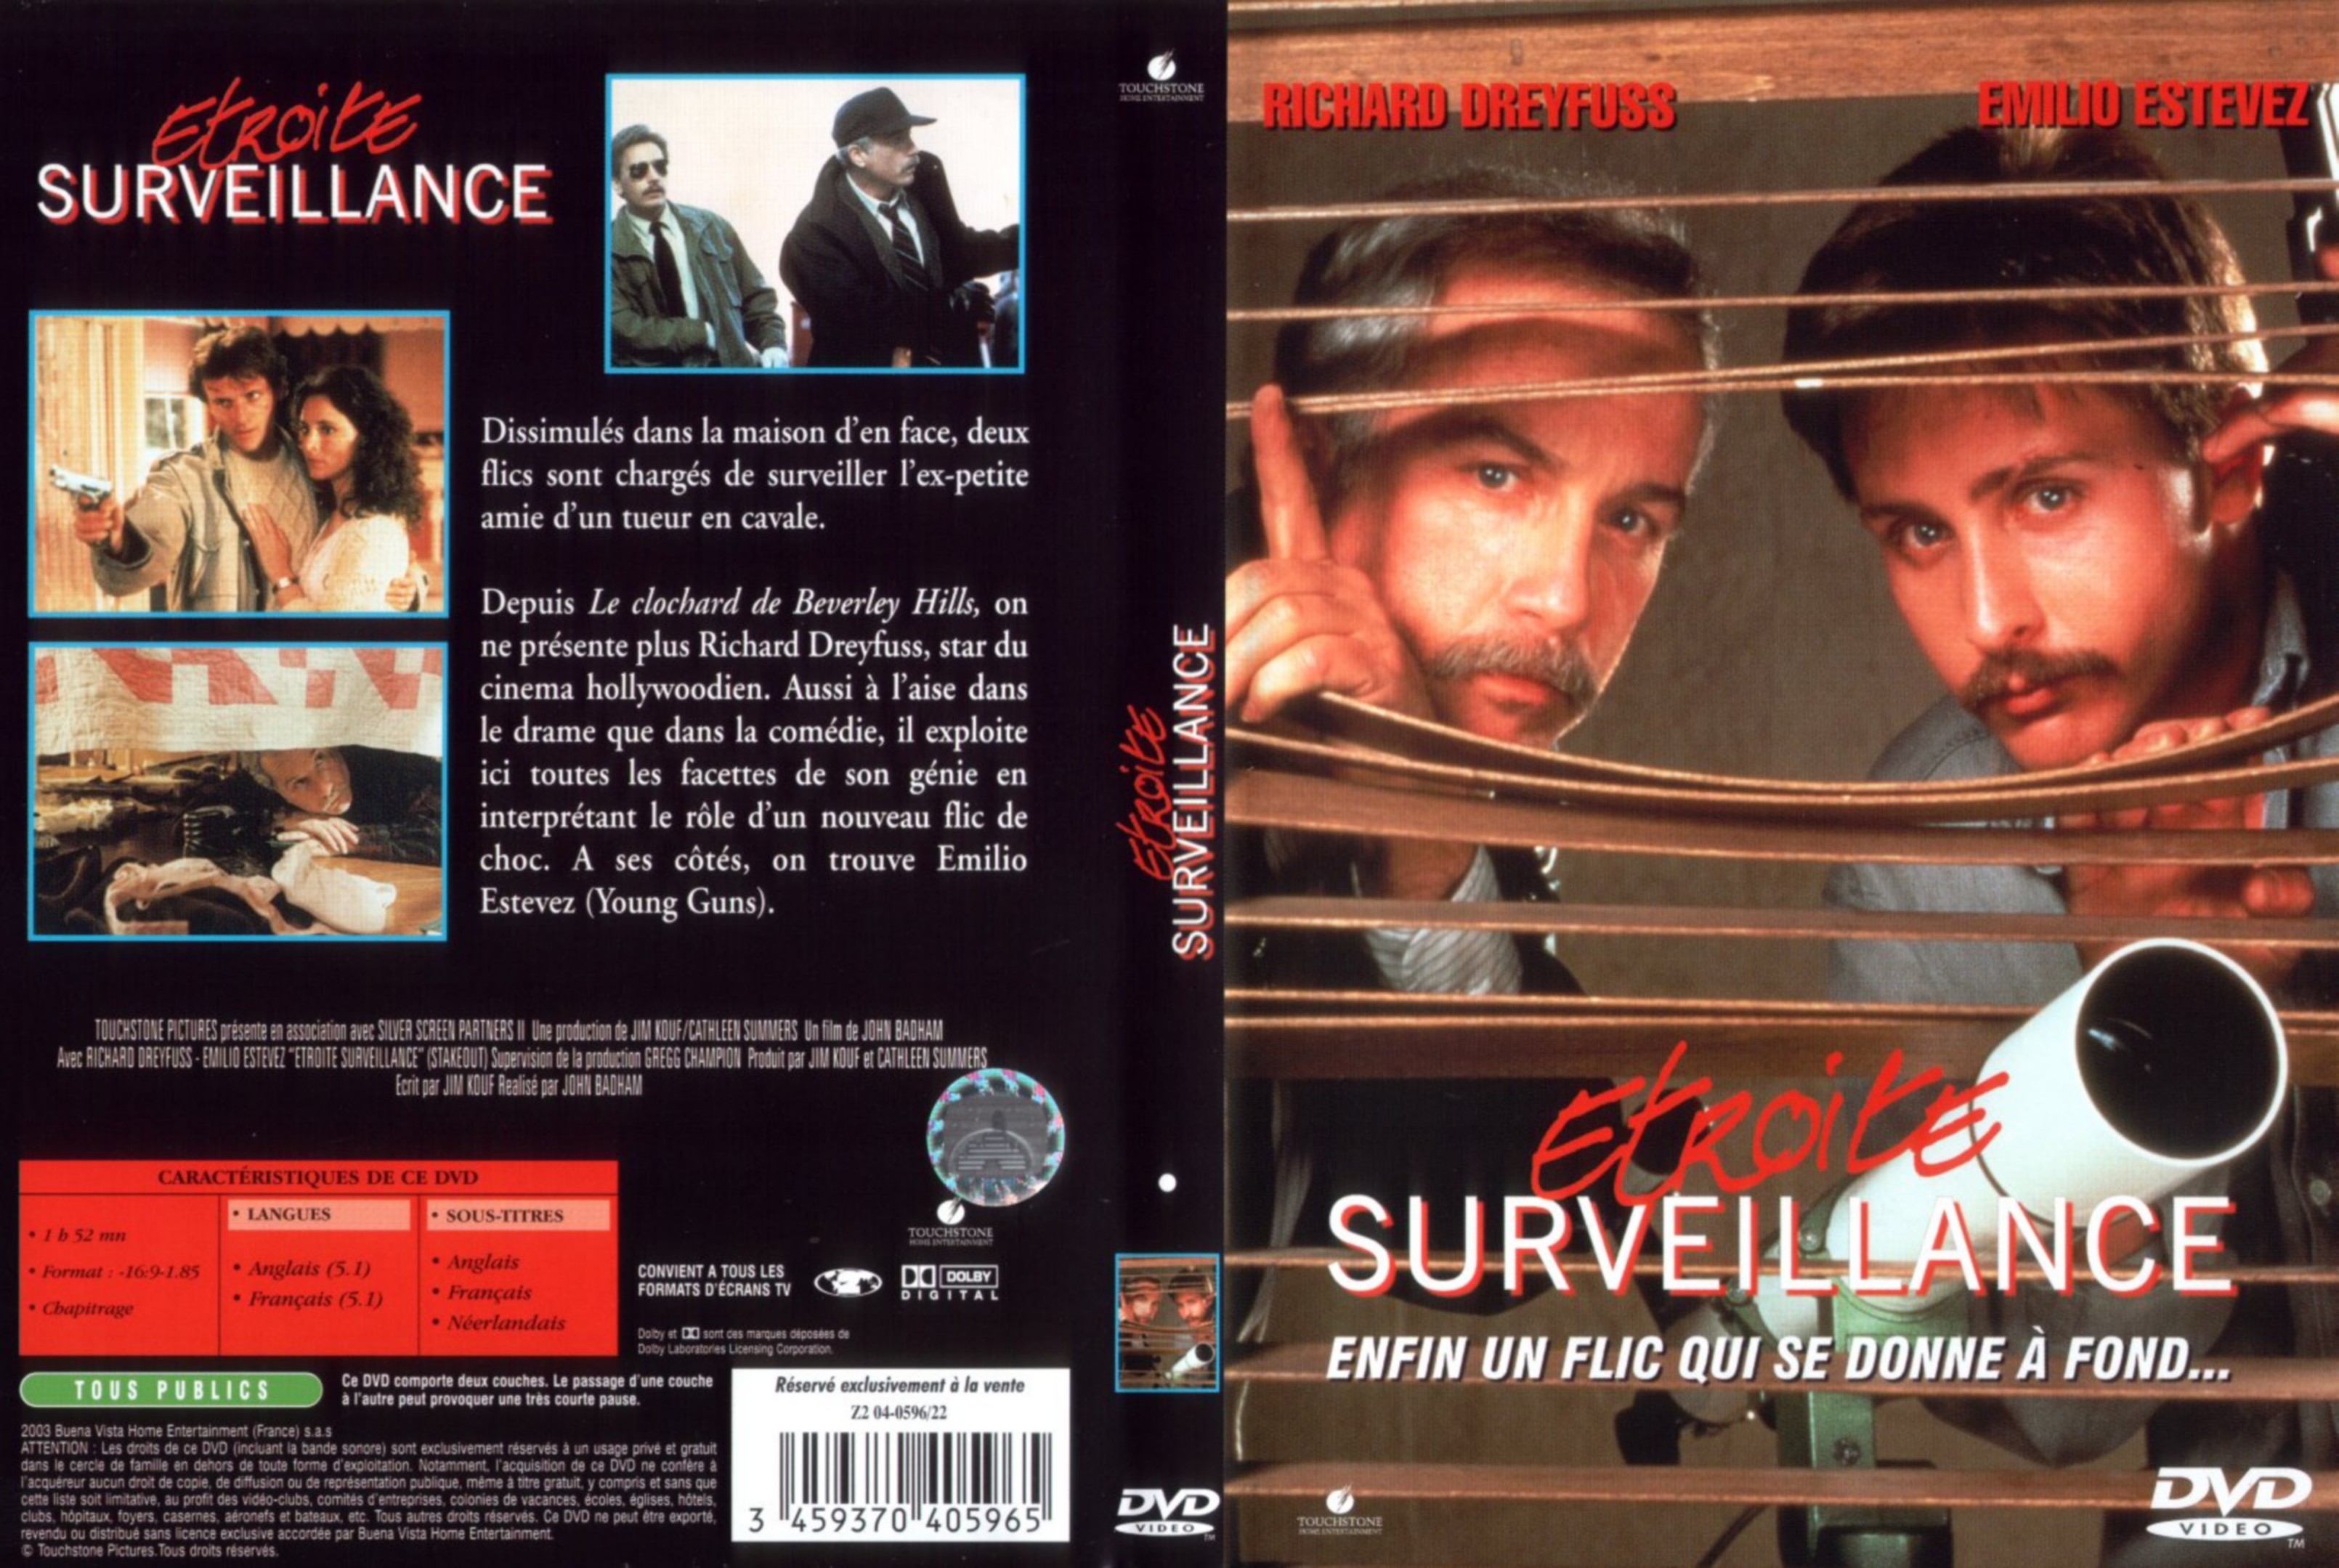 Jaquette DVD Etroite surveillance